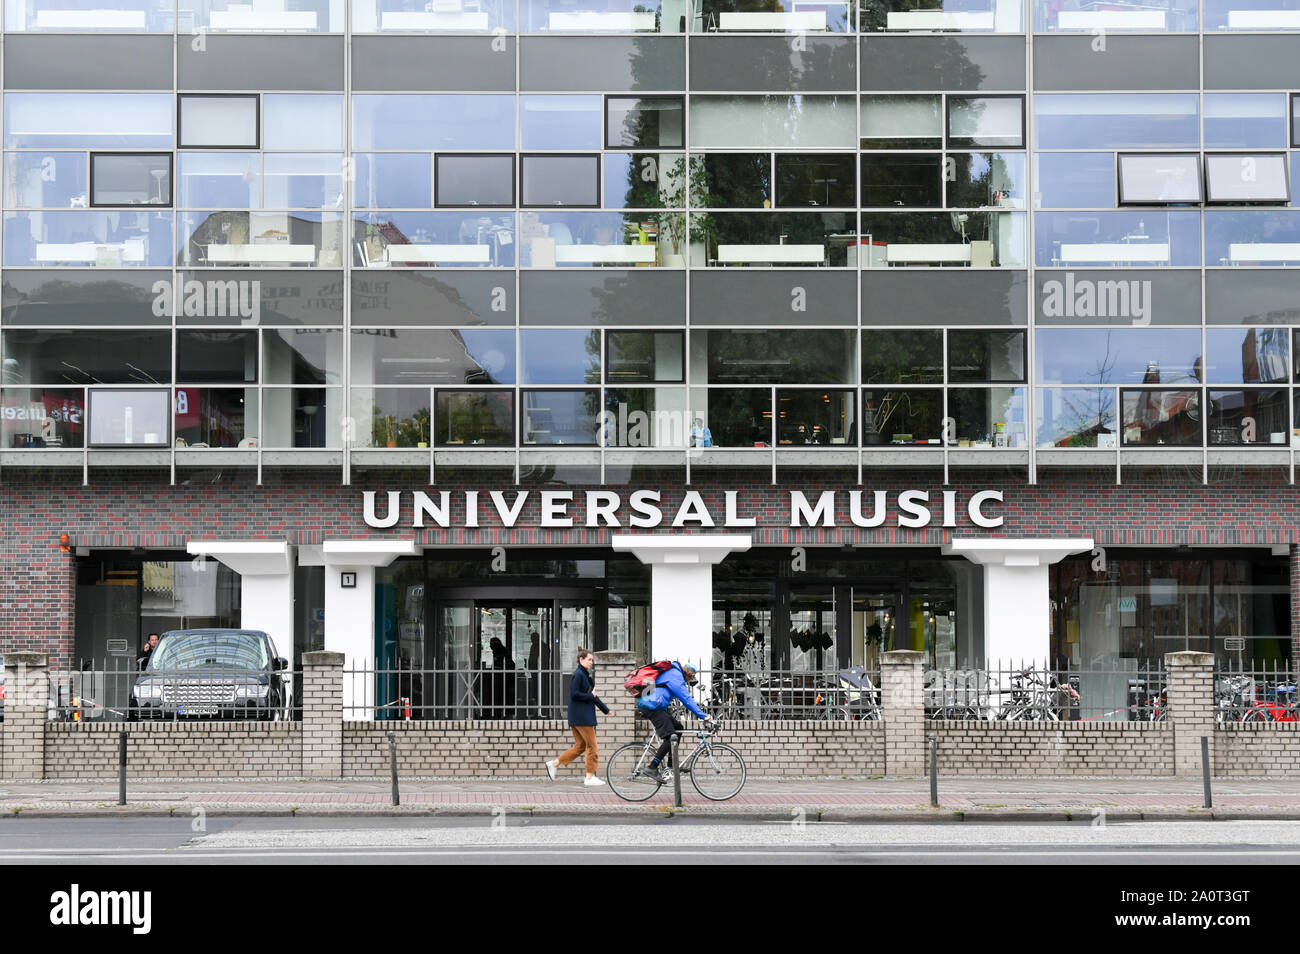 17 de septiembre de 2019, Berlín: la entrada y la fachada de Universal Music GmbH en Stralauer Allee. Foto: Jens Kalaene/dpa-Zentralbild/ZB Foto de stock